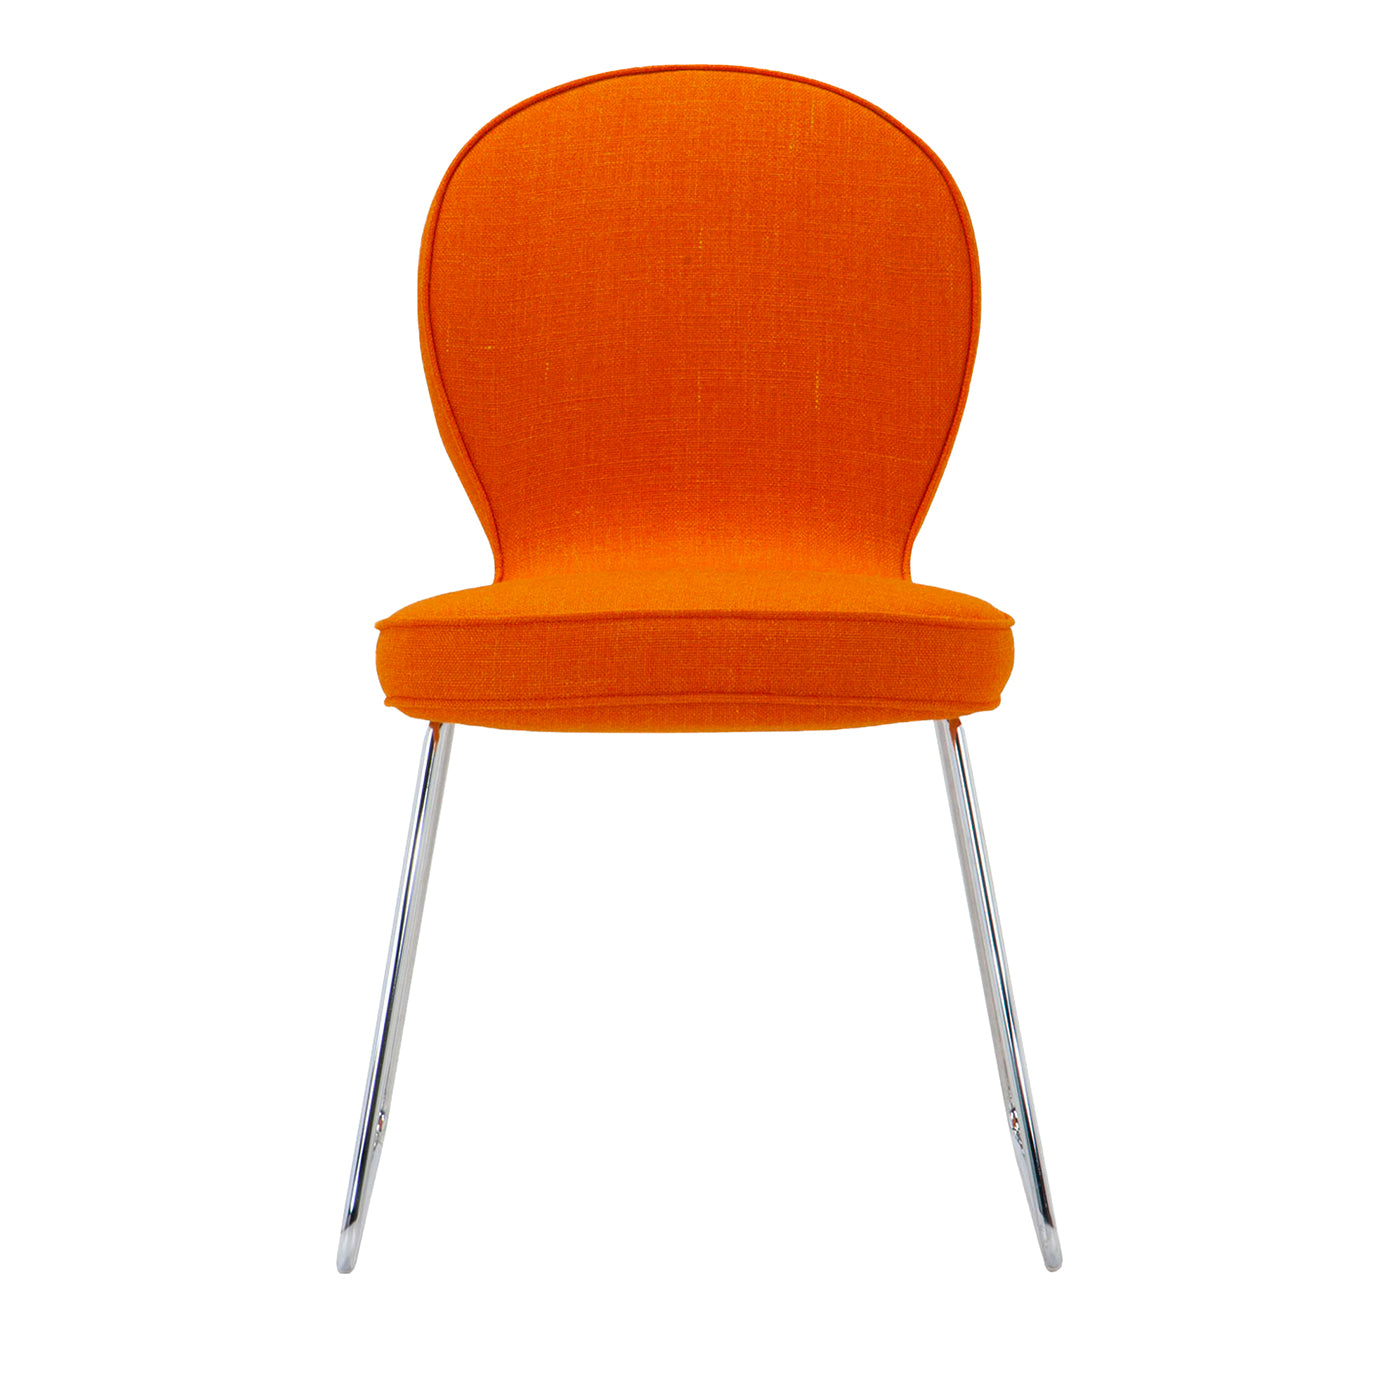 B4 Orange Chair by Simone Micheli - Main view